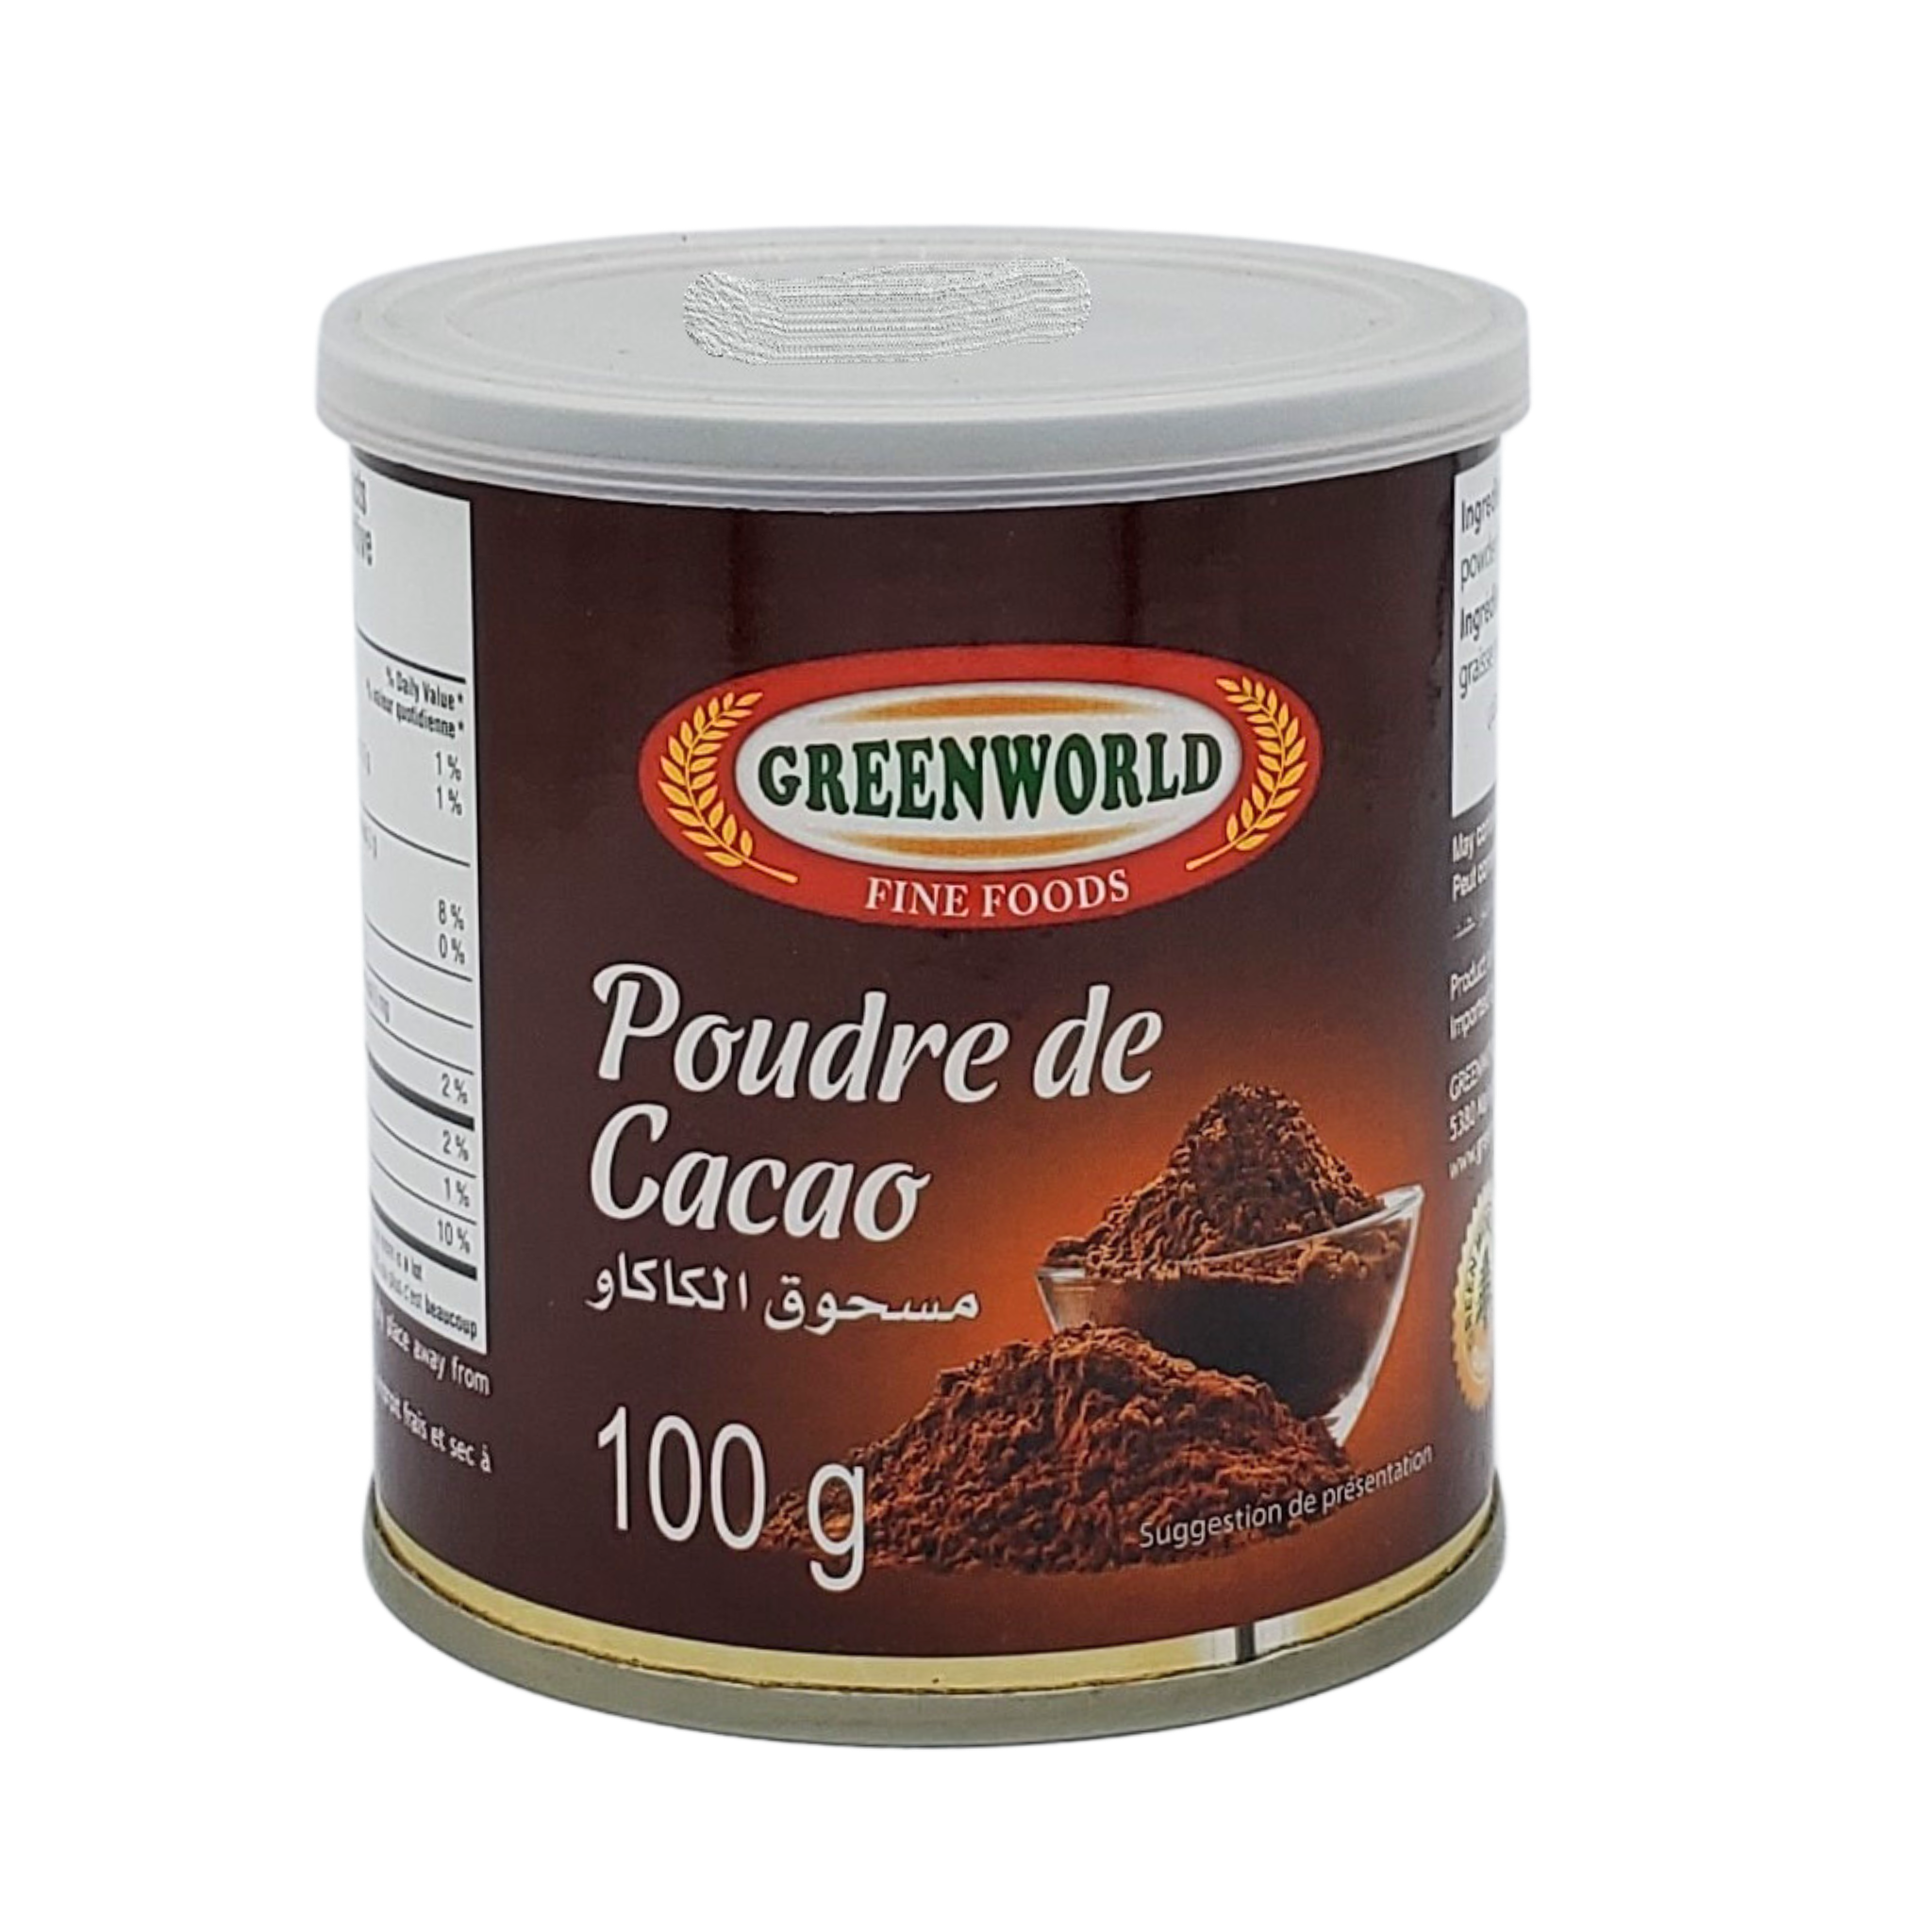 Greenworld Cocoa Powder 100g - Poudre de Cacao